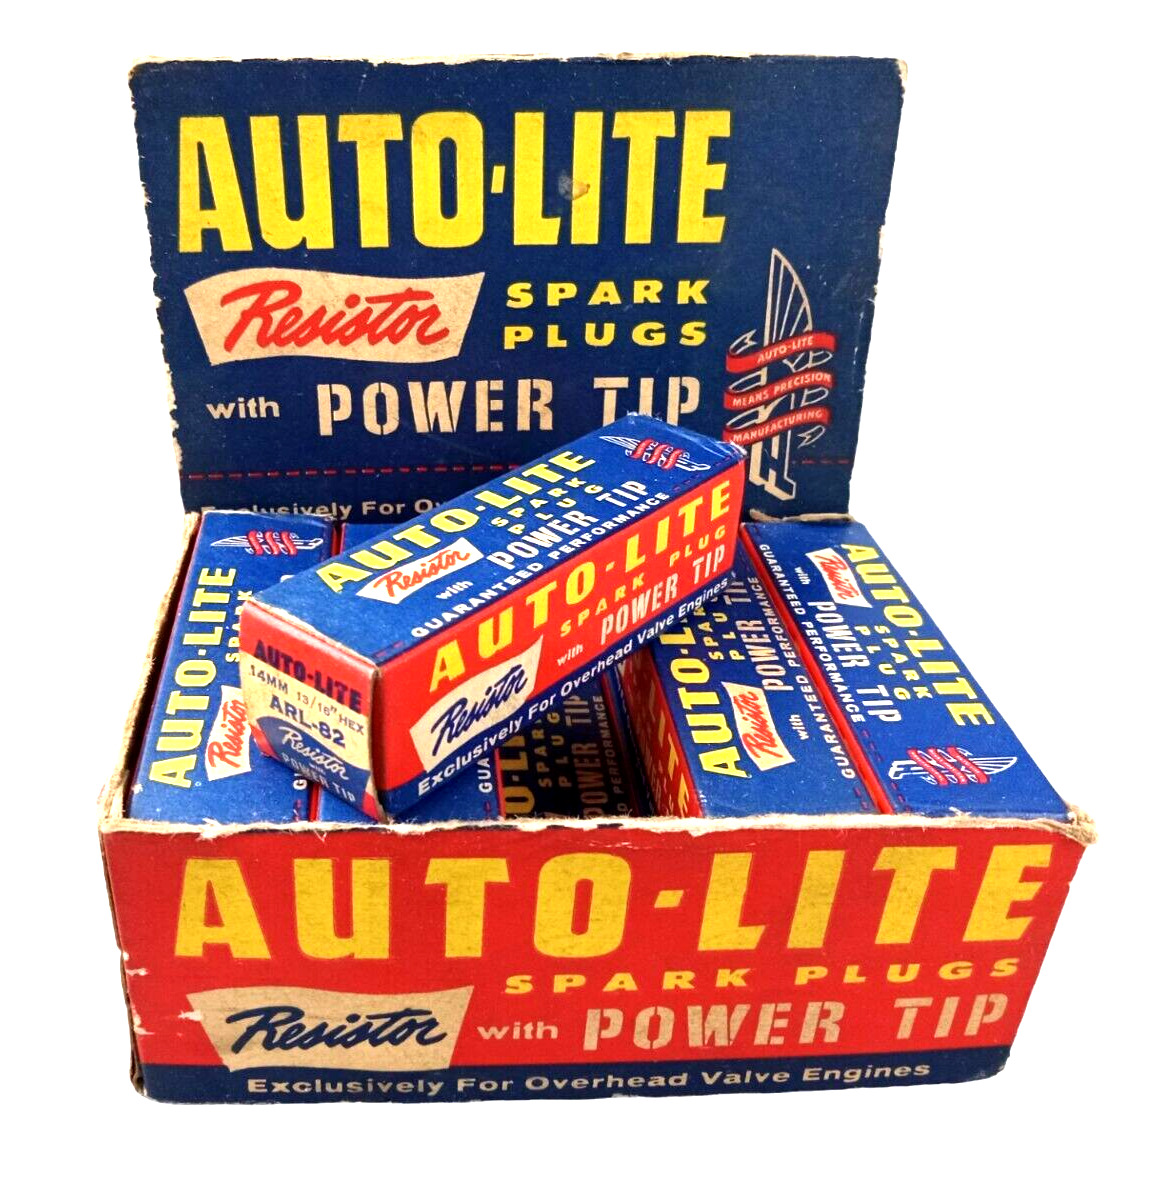 NOS Vintage AUTO-LITE ARL-82 Resistor Power Tip Spark Plug Box of 10 Plugs NOS